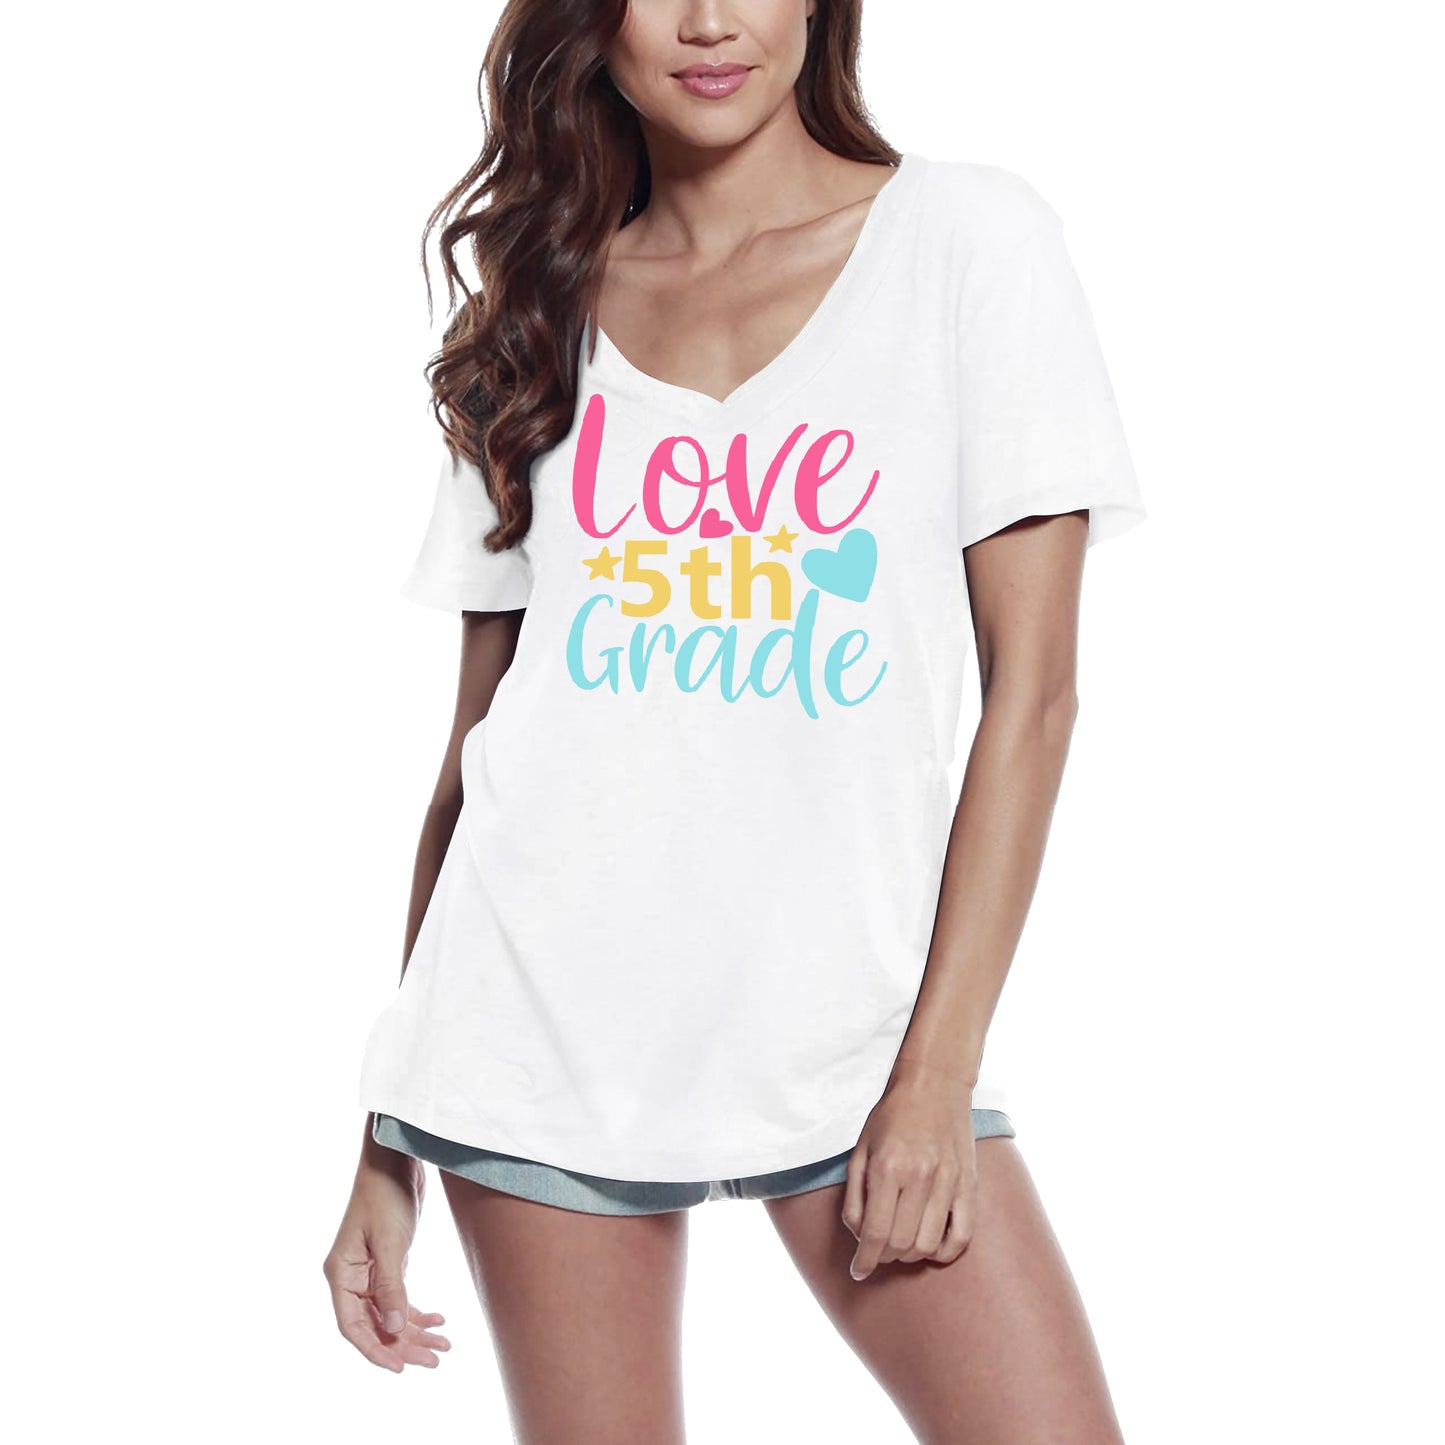 ULTRABASIC Women's T-Shirt 5th Grade Love - Short Sleeve Tee Shirt Tops